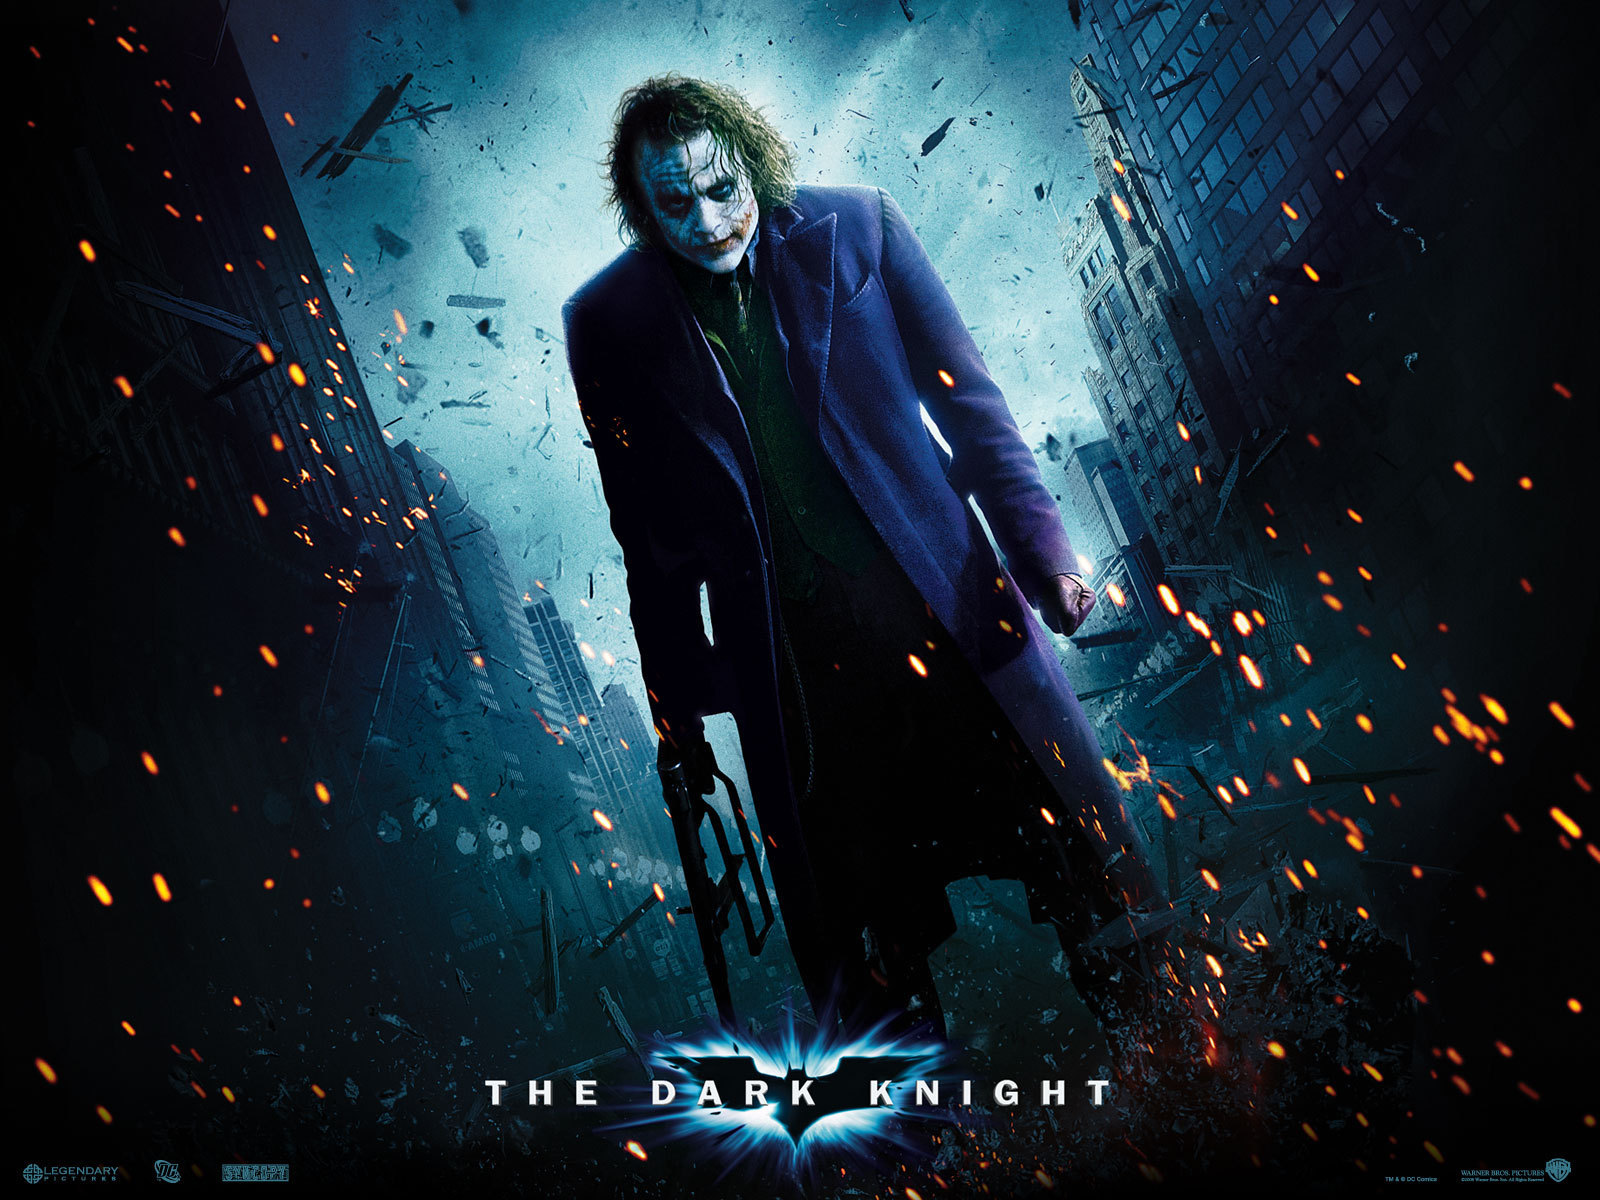 Joker - The Joker 1600x1200 1024x768 800x600